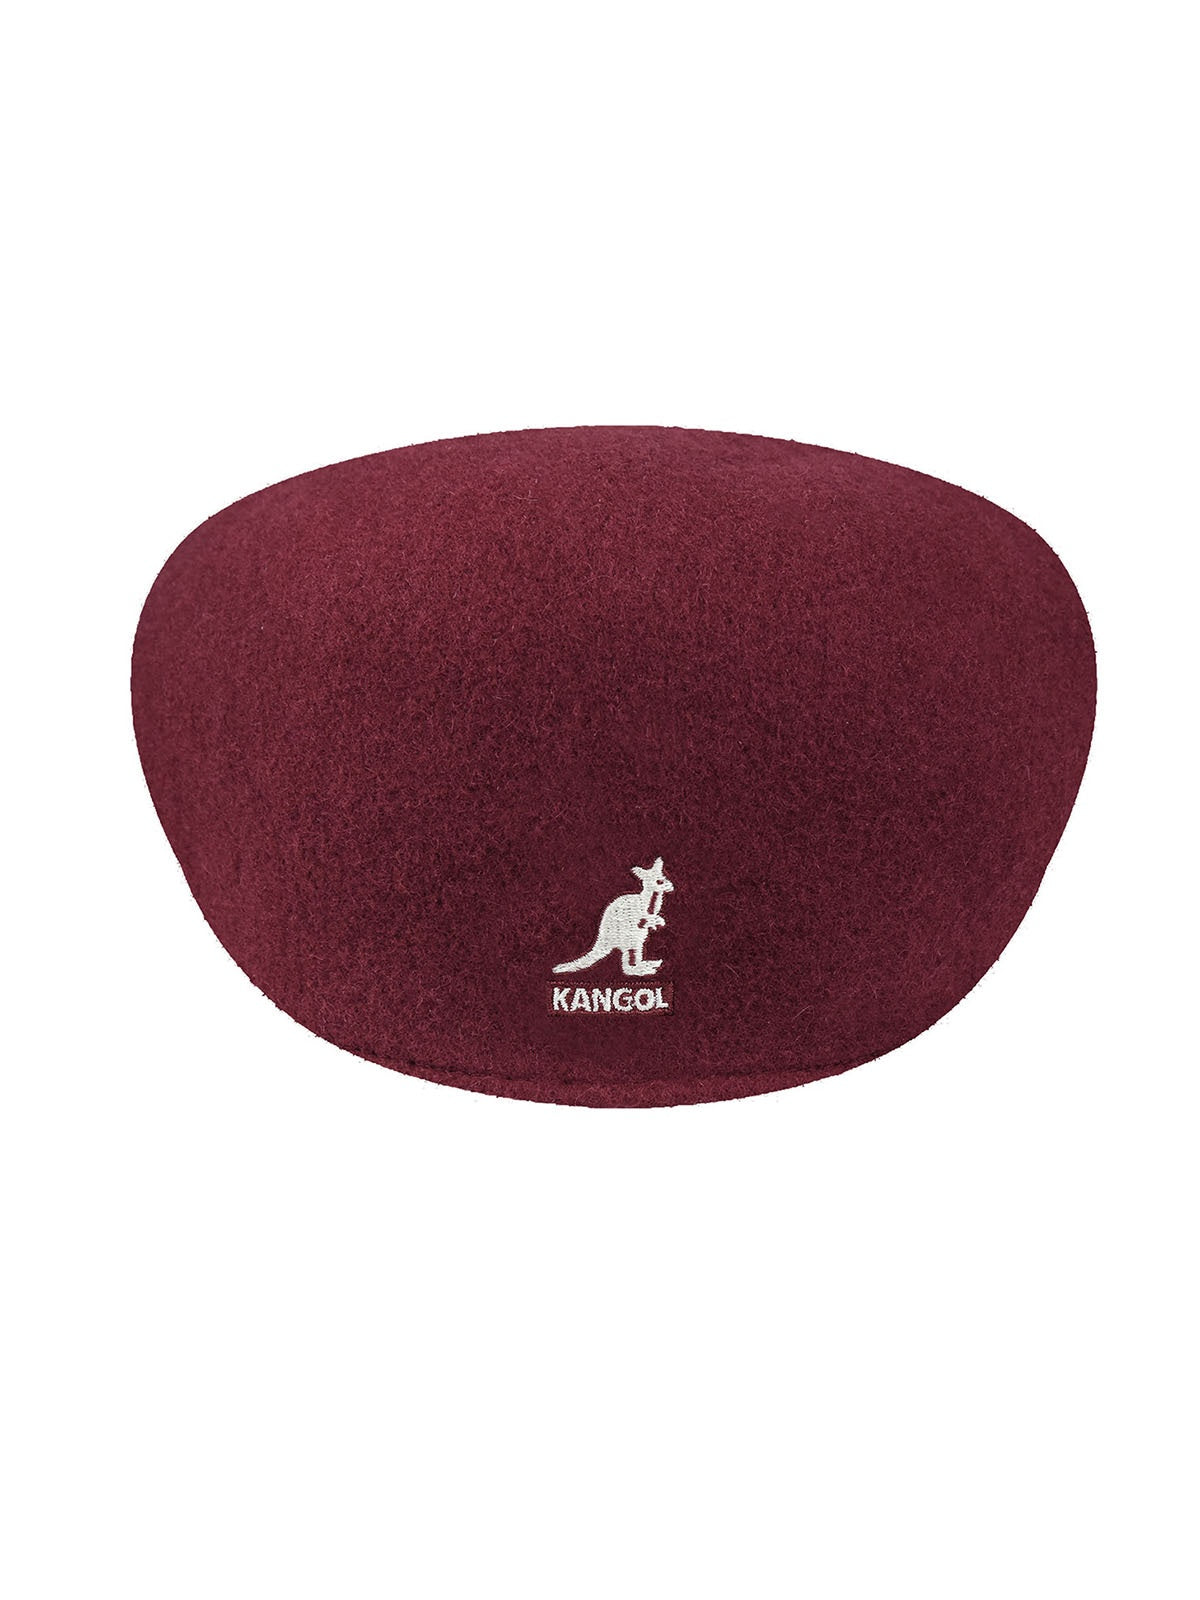 Baschi e berretti Unisex Kangol - Wool 504 Cap - Bordeaux